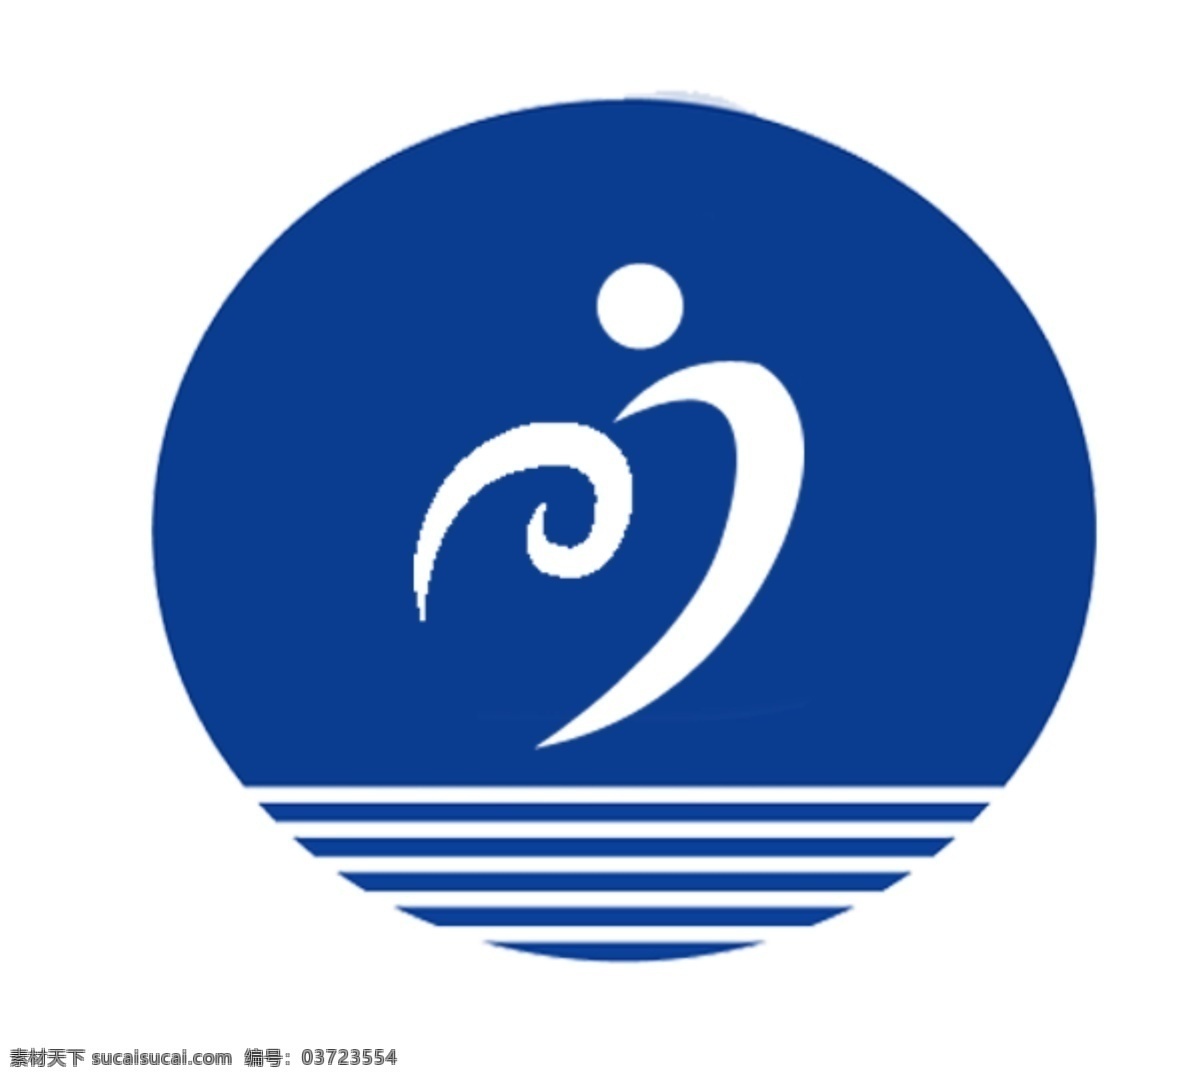 七 四 班 旗 高清 logo 标志设计 设计图 七四班班旗 原创设计 其他原创设计